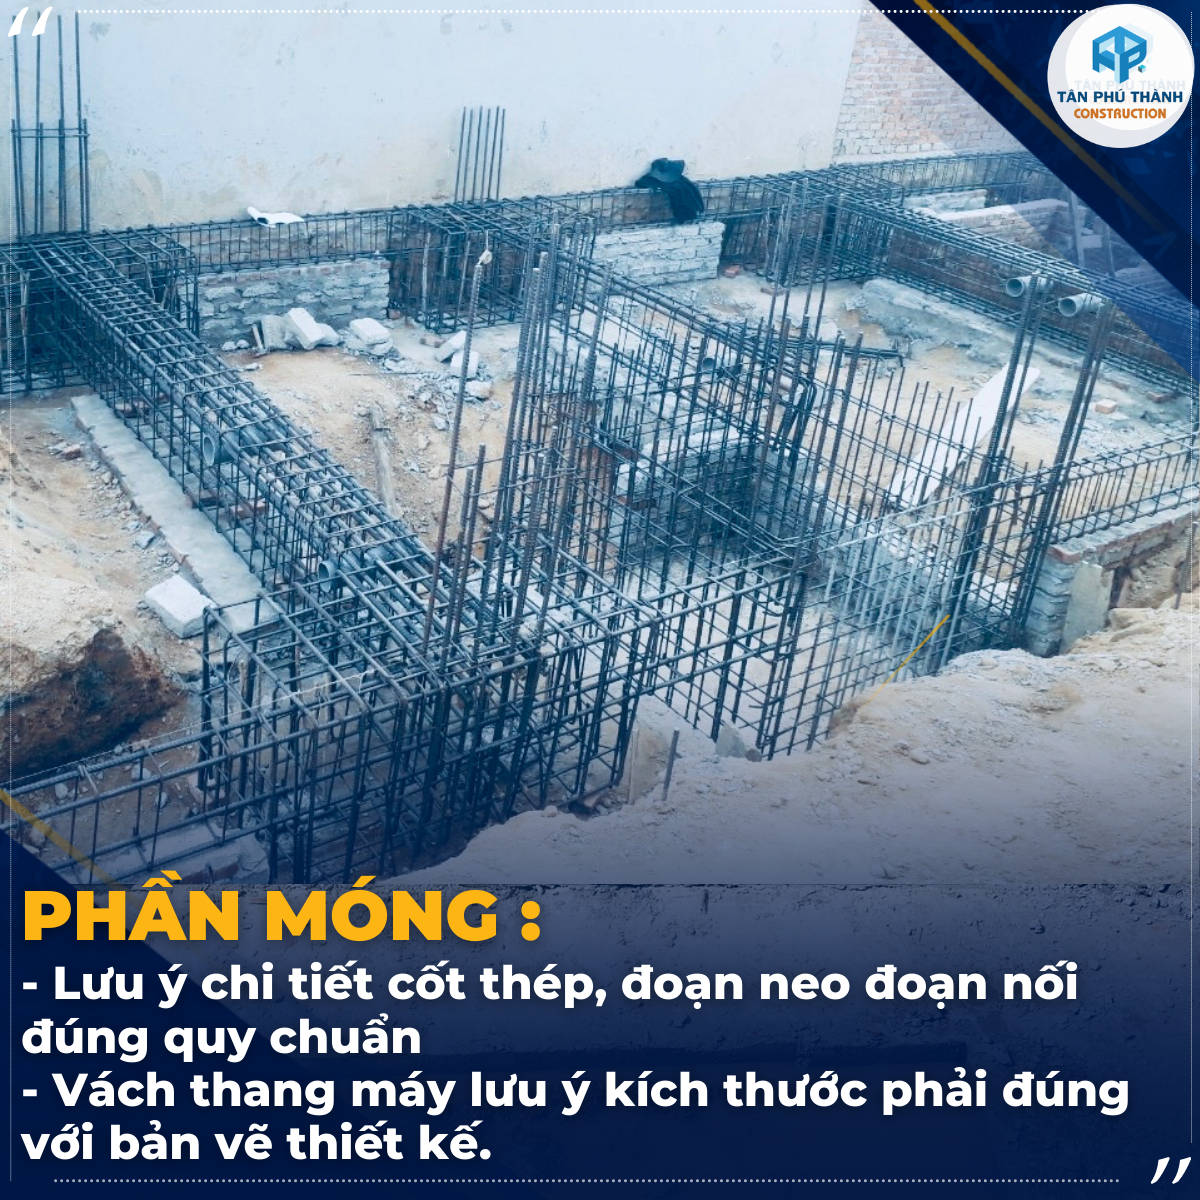 TÂN PHÚ THÀNH đơn vị thi công xây nhà trọn gói uy tín Đà Nẵng